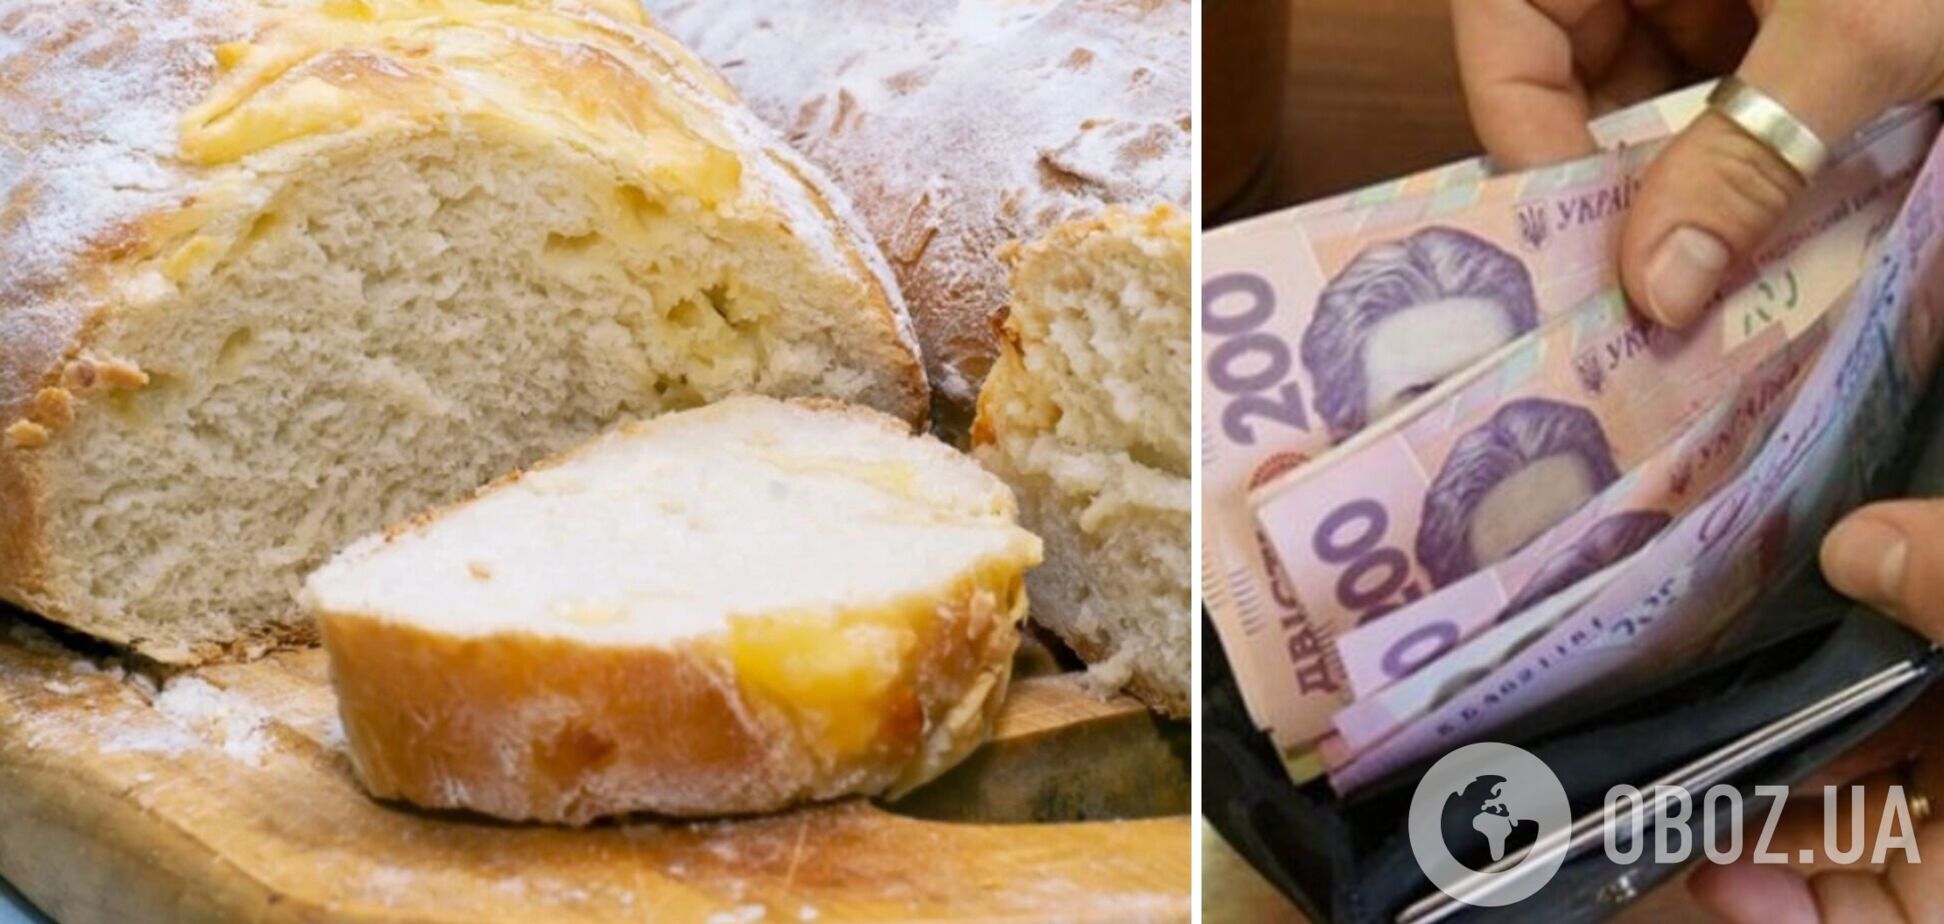 Стало известно, вырастет ли цена на хлеб в Украине